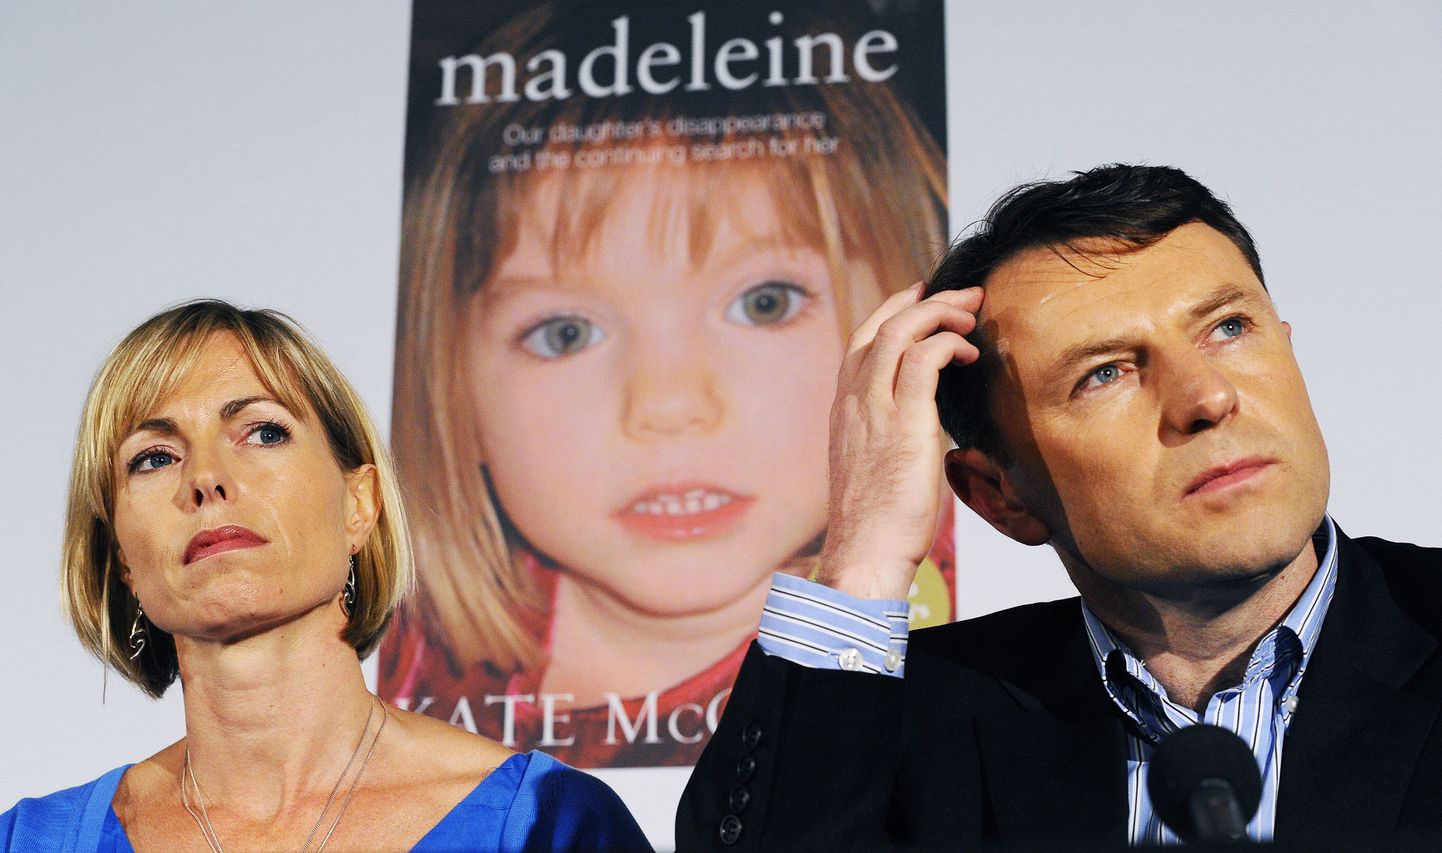 Kate ja Gerry McCann 2011. aastal pressikonverentsil, mis järgnes nende tütre kadumisele pühendatud raamatu esitlusele. Raamatu autor on Kate McCann.